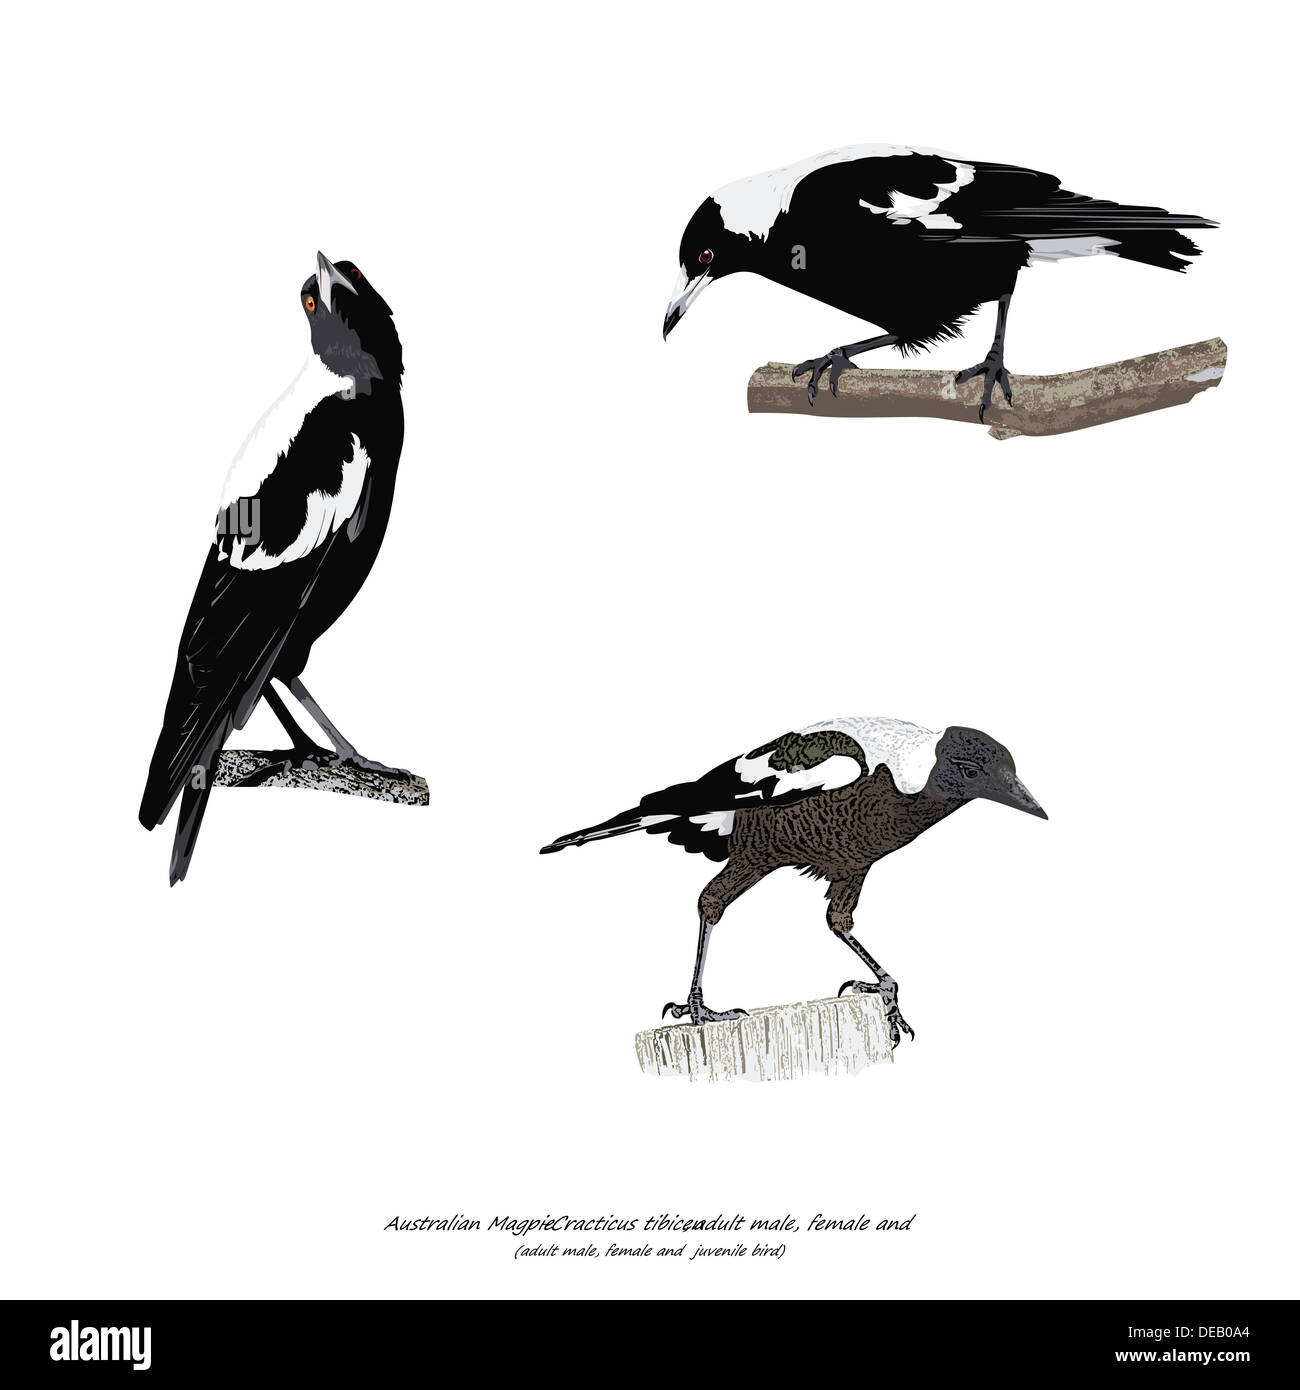 Australian Magpie Illustration Stock Photo